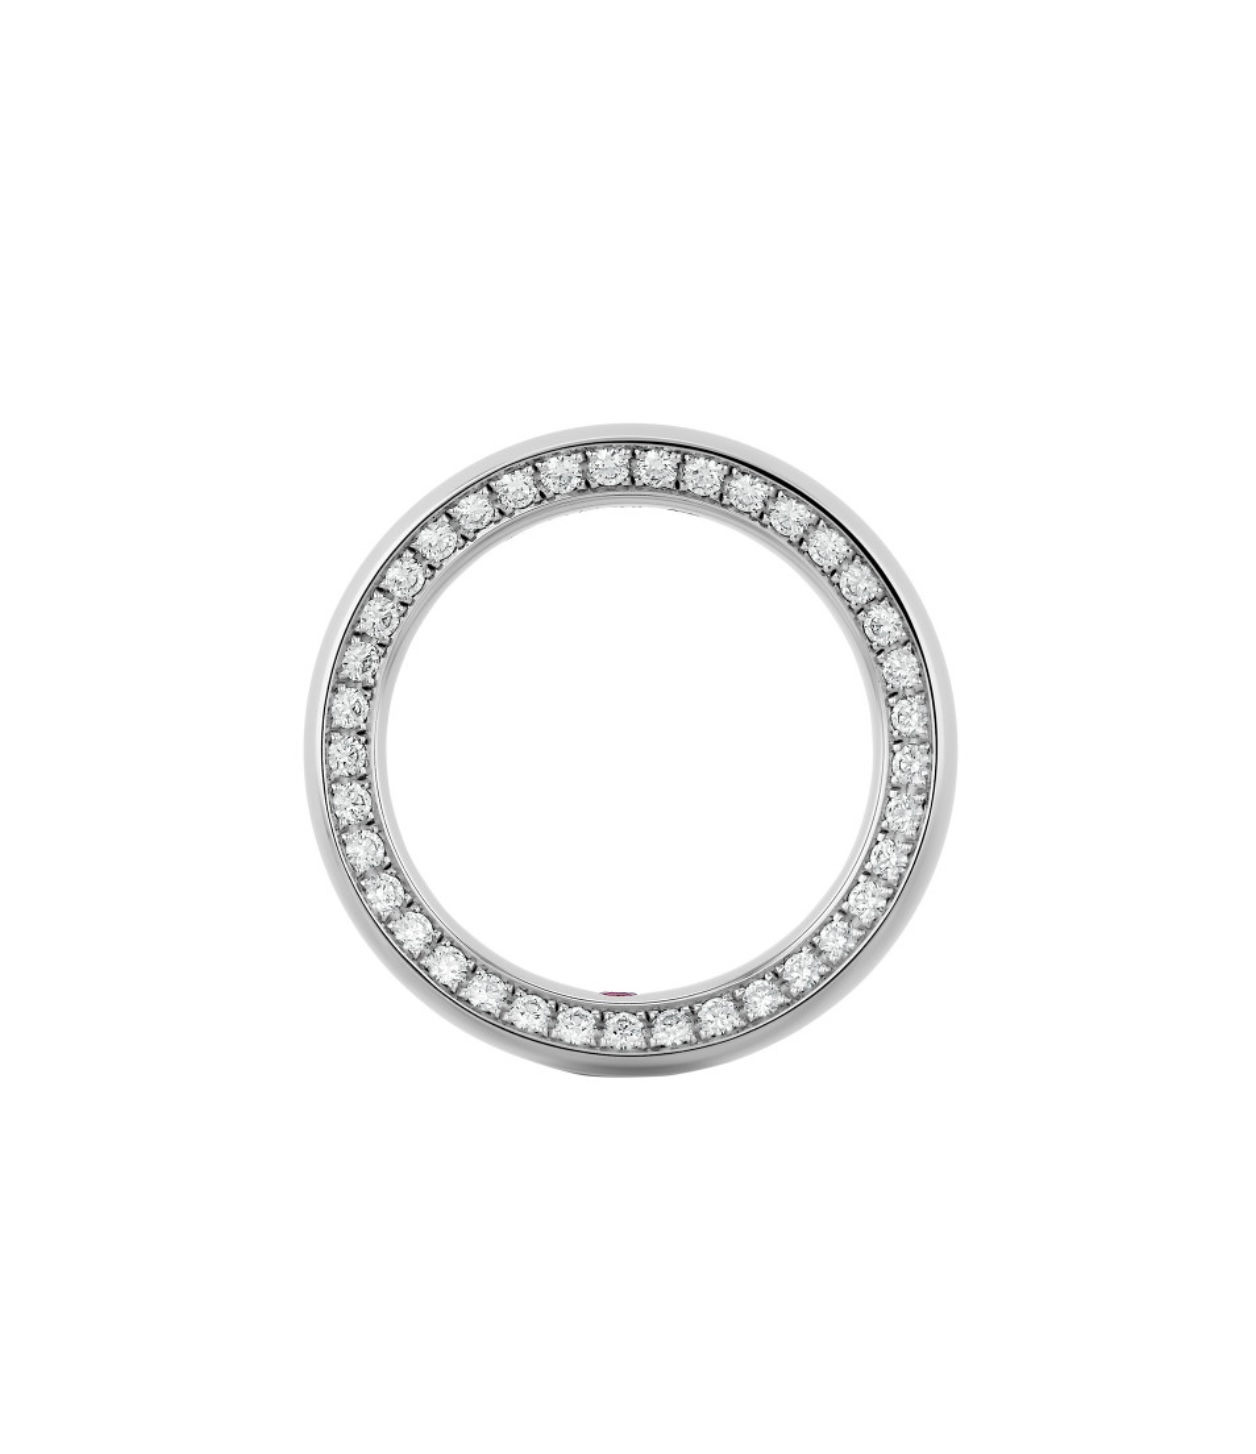 Обручальное кольцо с бриллиантами(0,32 ct.) и рубином(0,004 ct.) из платины 950 пробы 